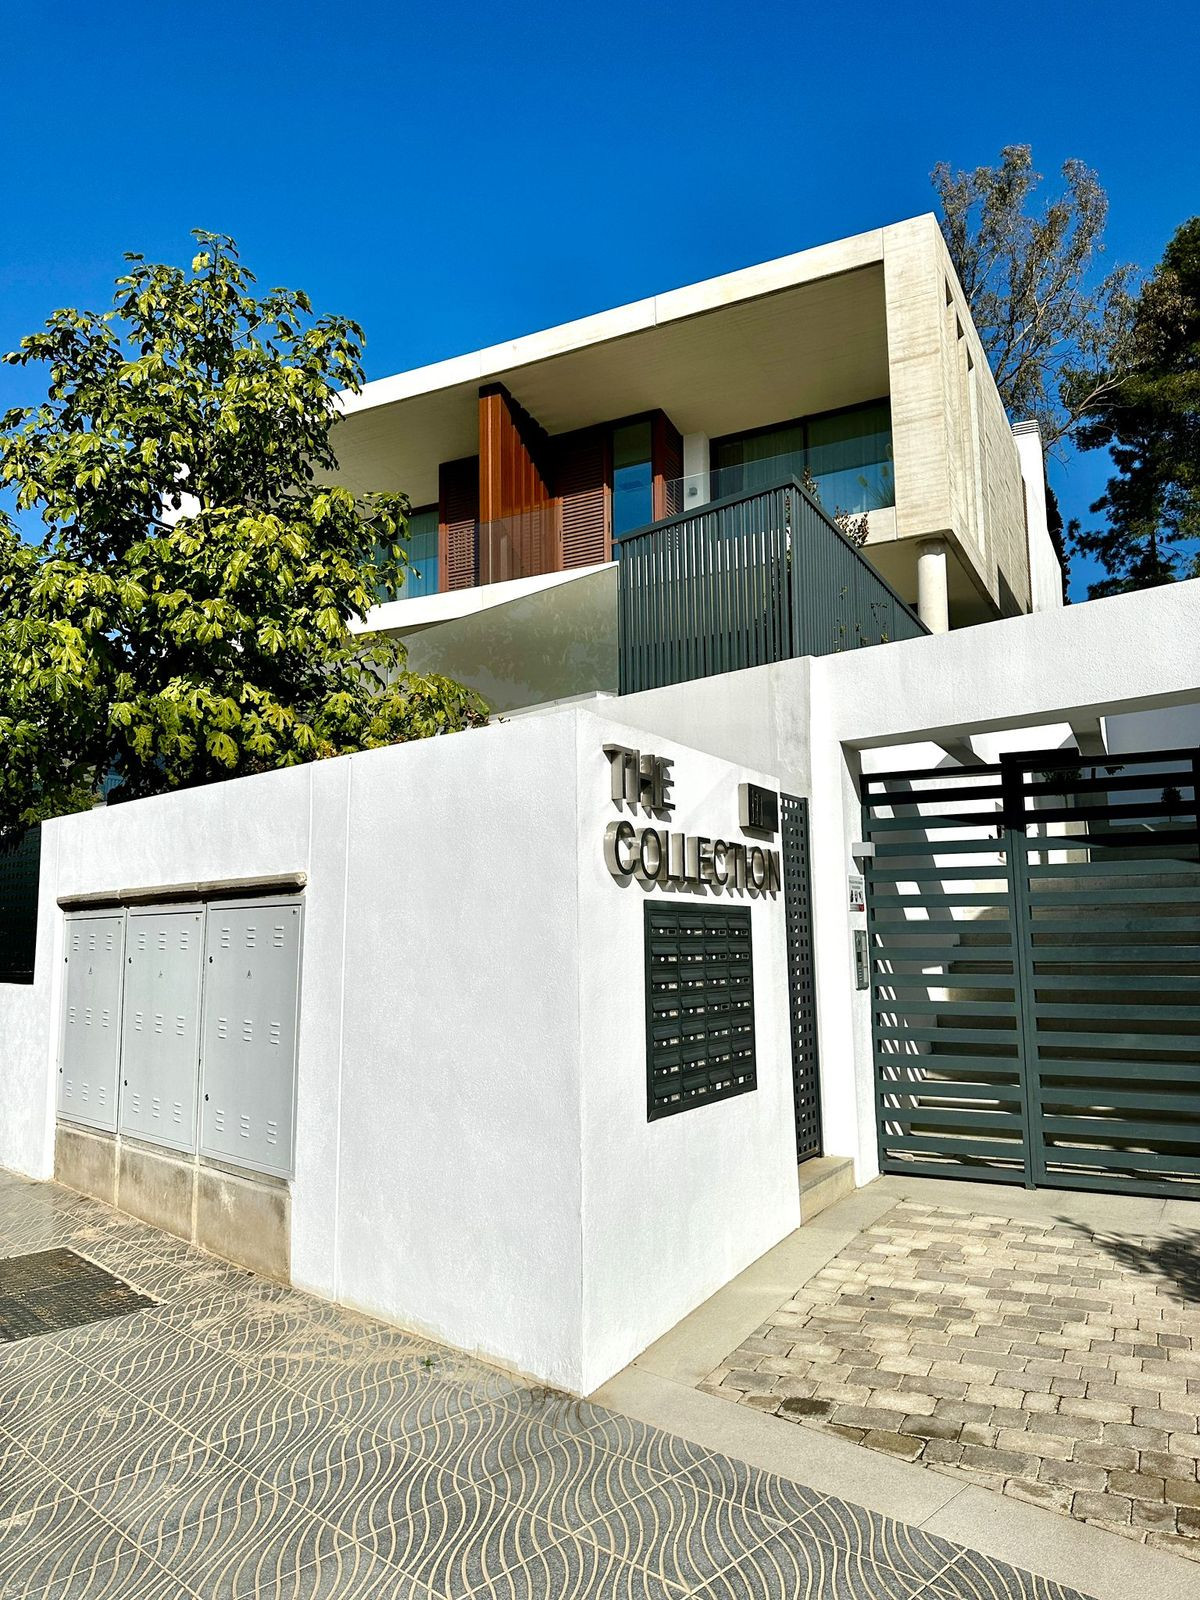 Villa for sale in The Golden Mile, Costa del Sol